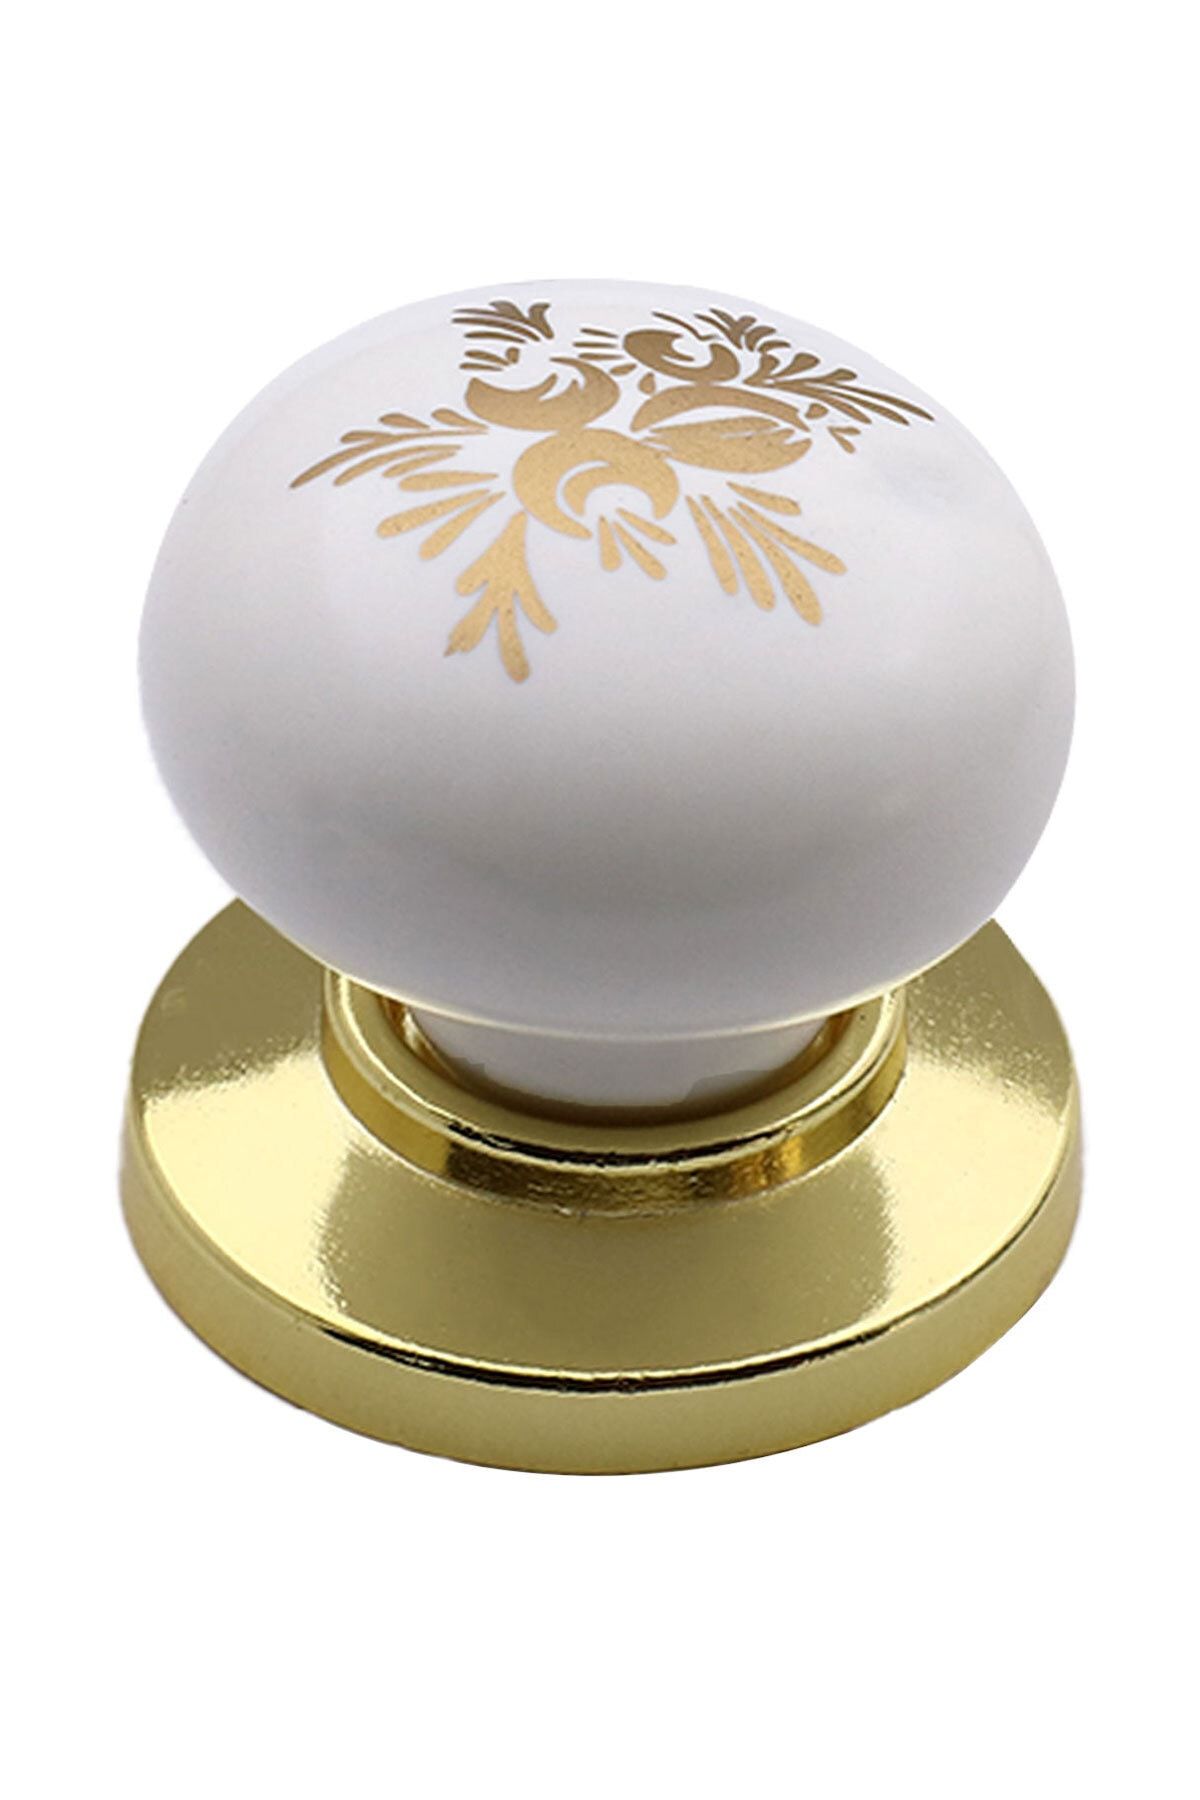 Badem10 Eymen Düğme Çekmece Dolap Kapak Kulpu Kulbu Altın Sarı Polimer Kulp Mobilya Mutfak